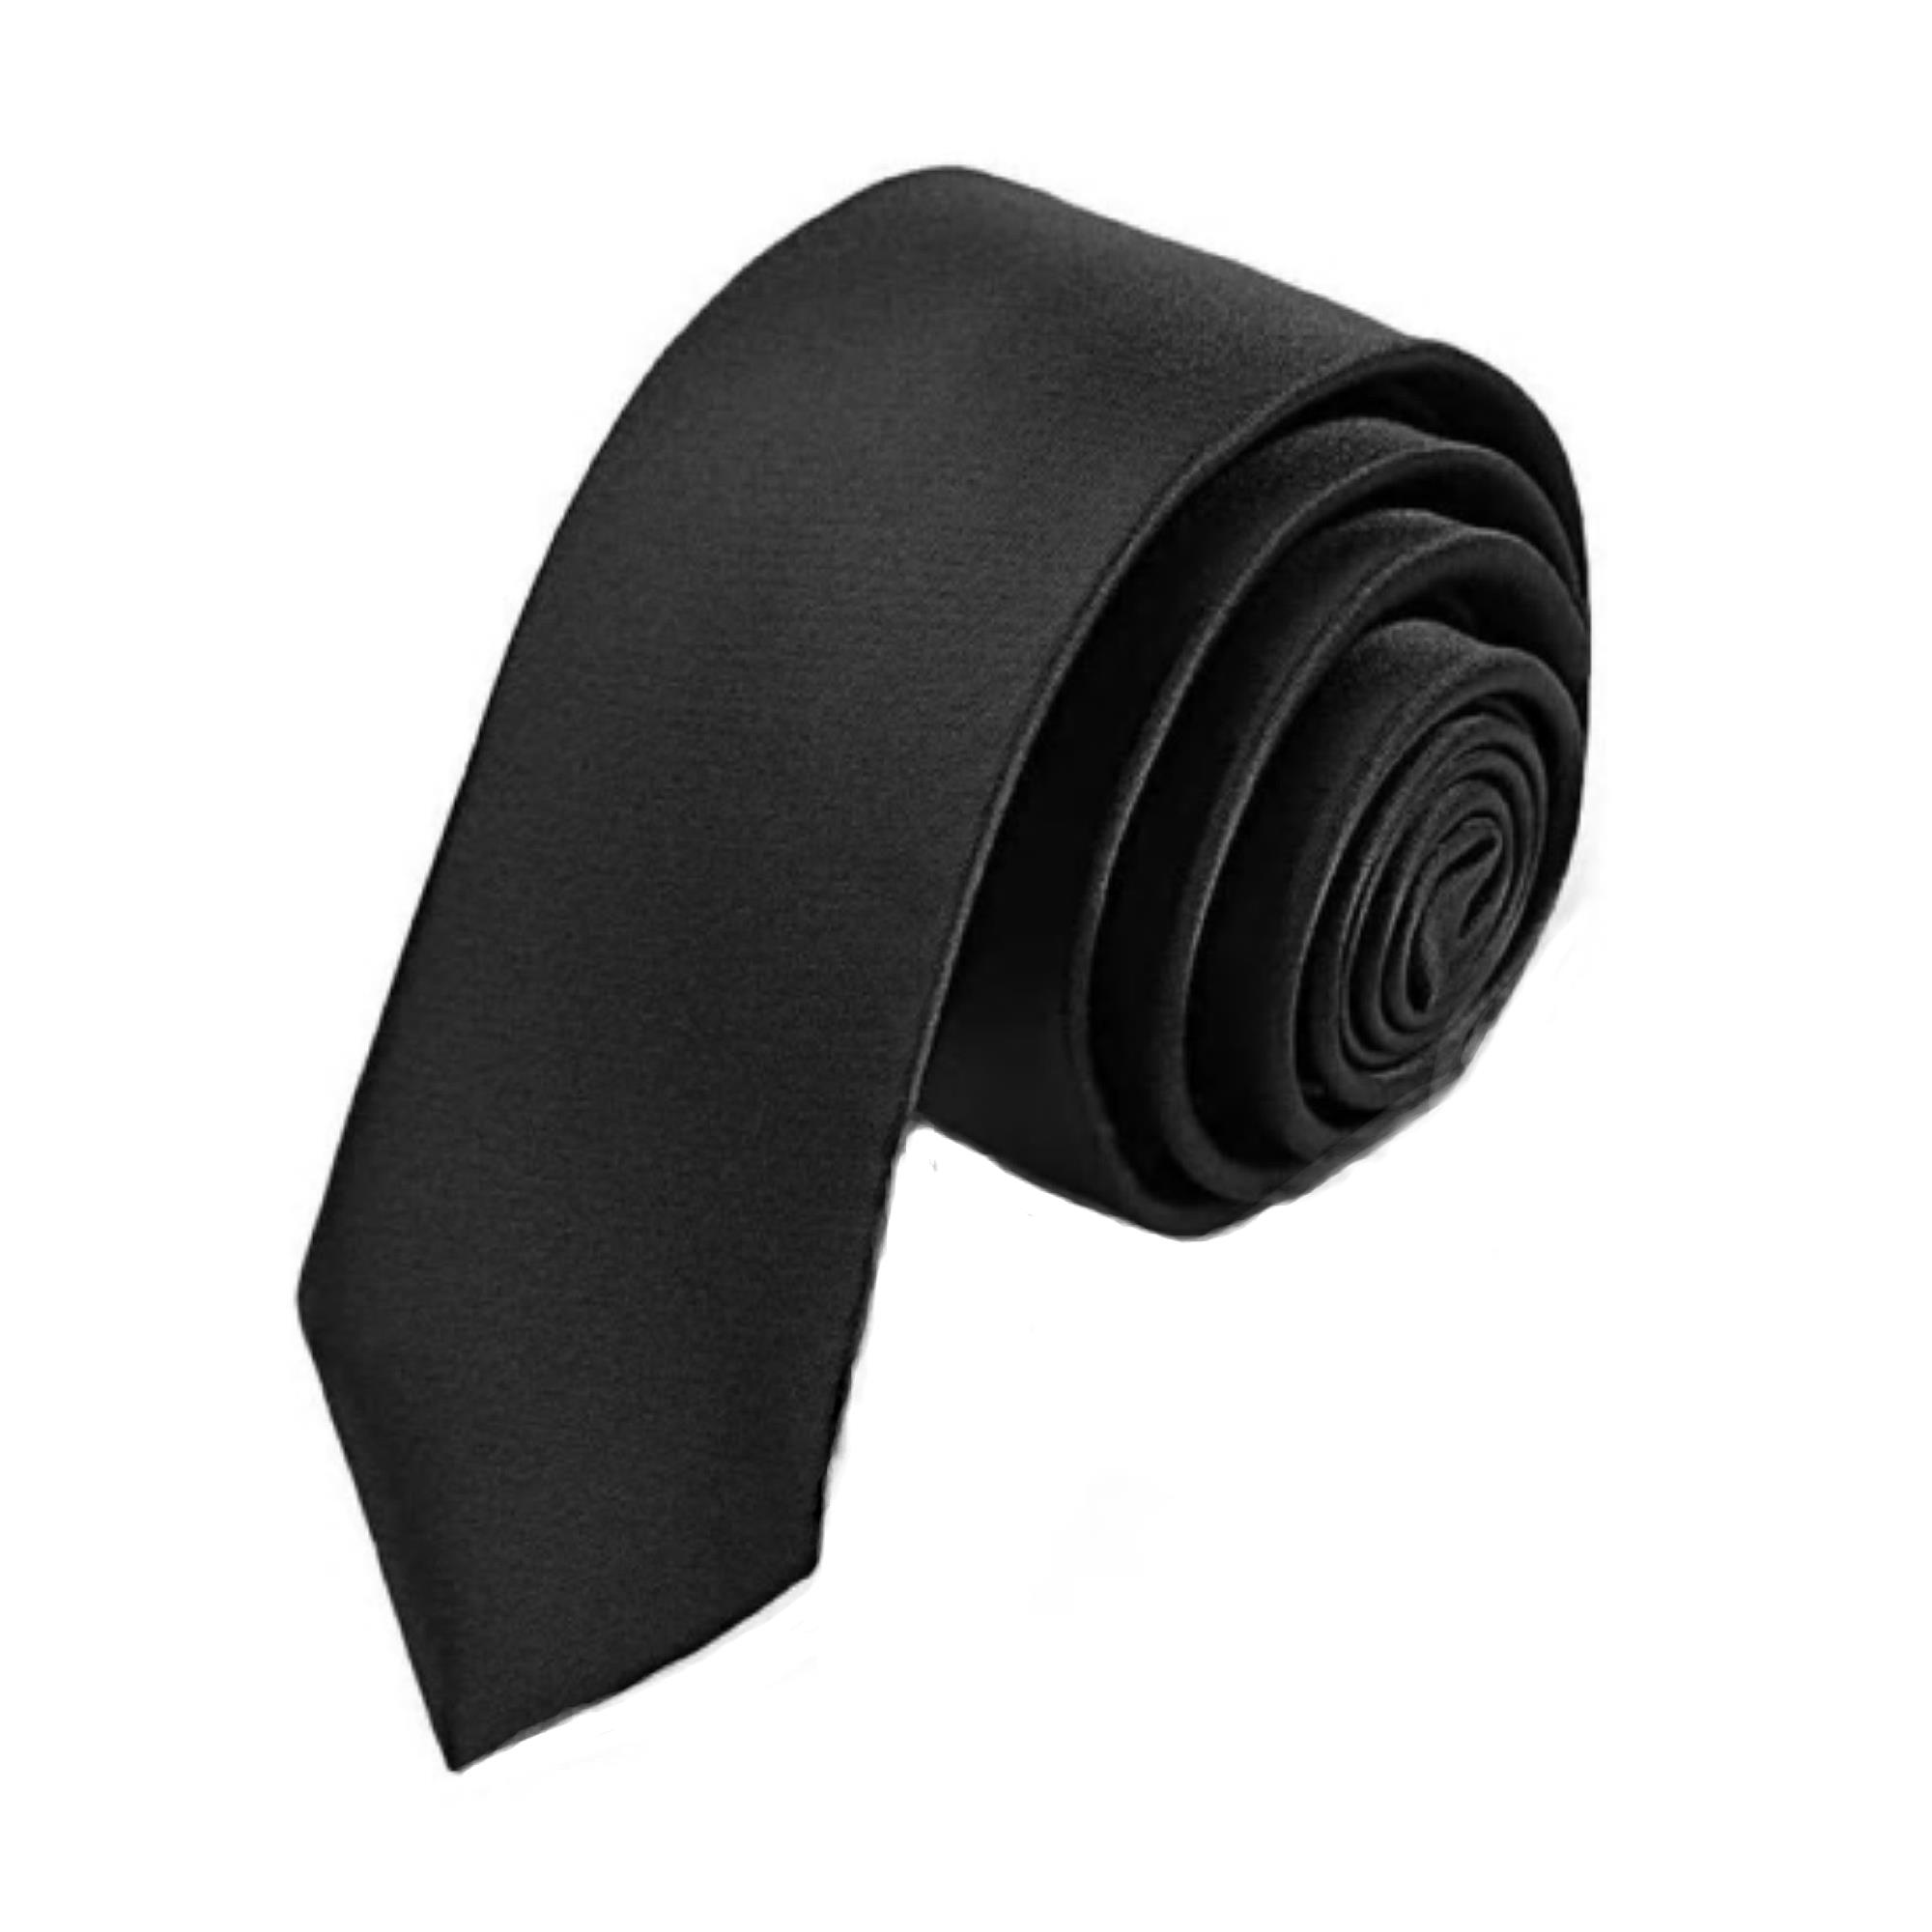 Cravatta stretta cravattino da uomo slim sottile 5 cm nera rossa blu bianca oro\